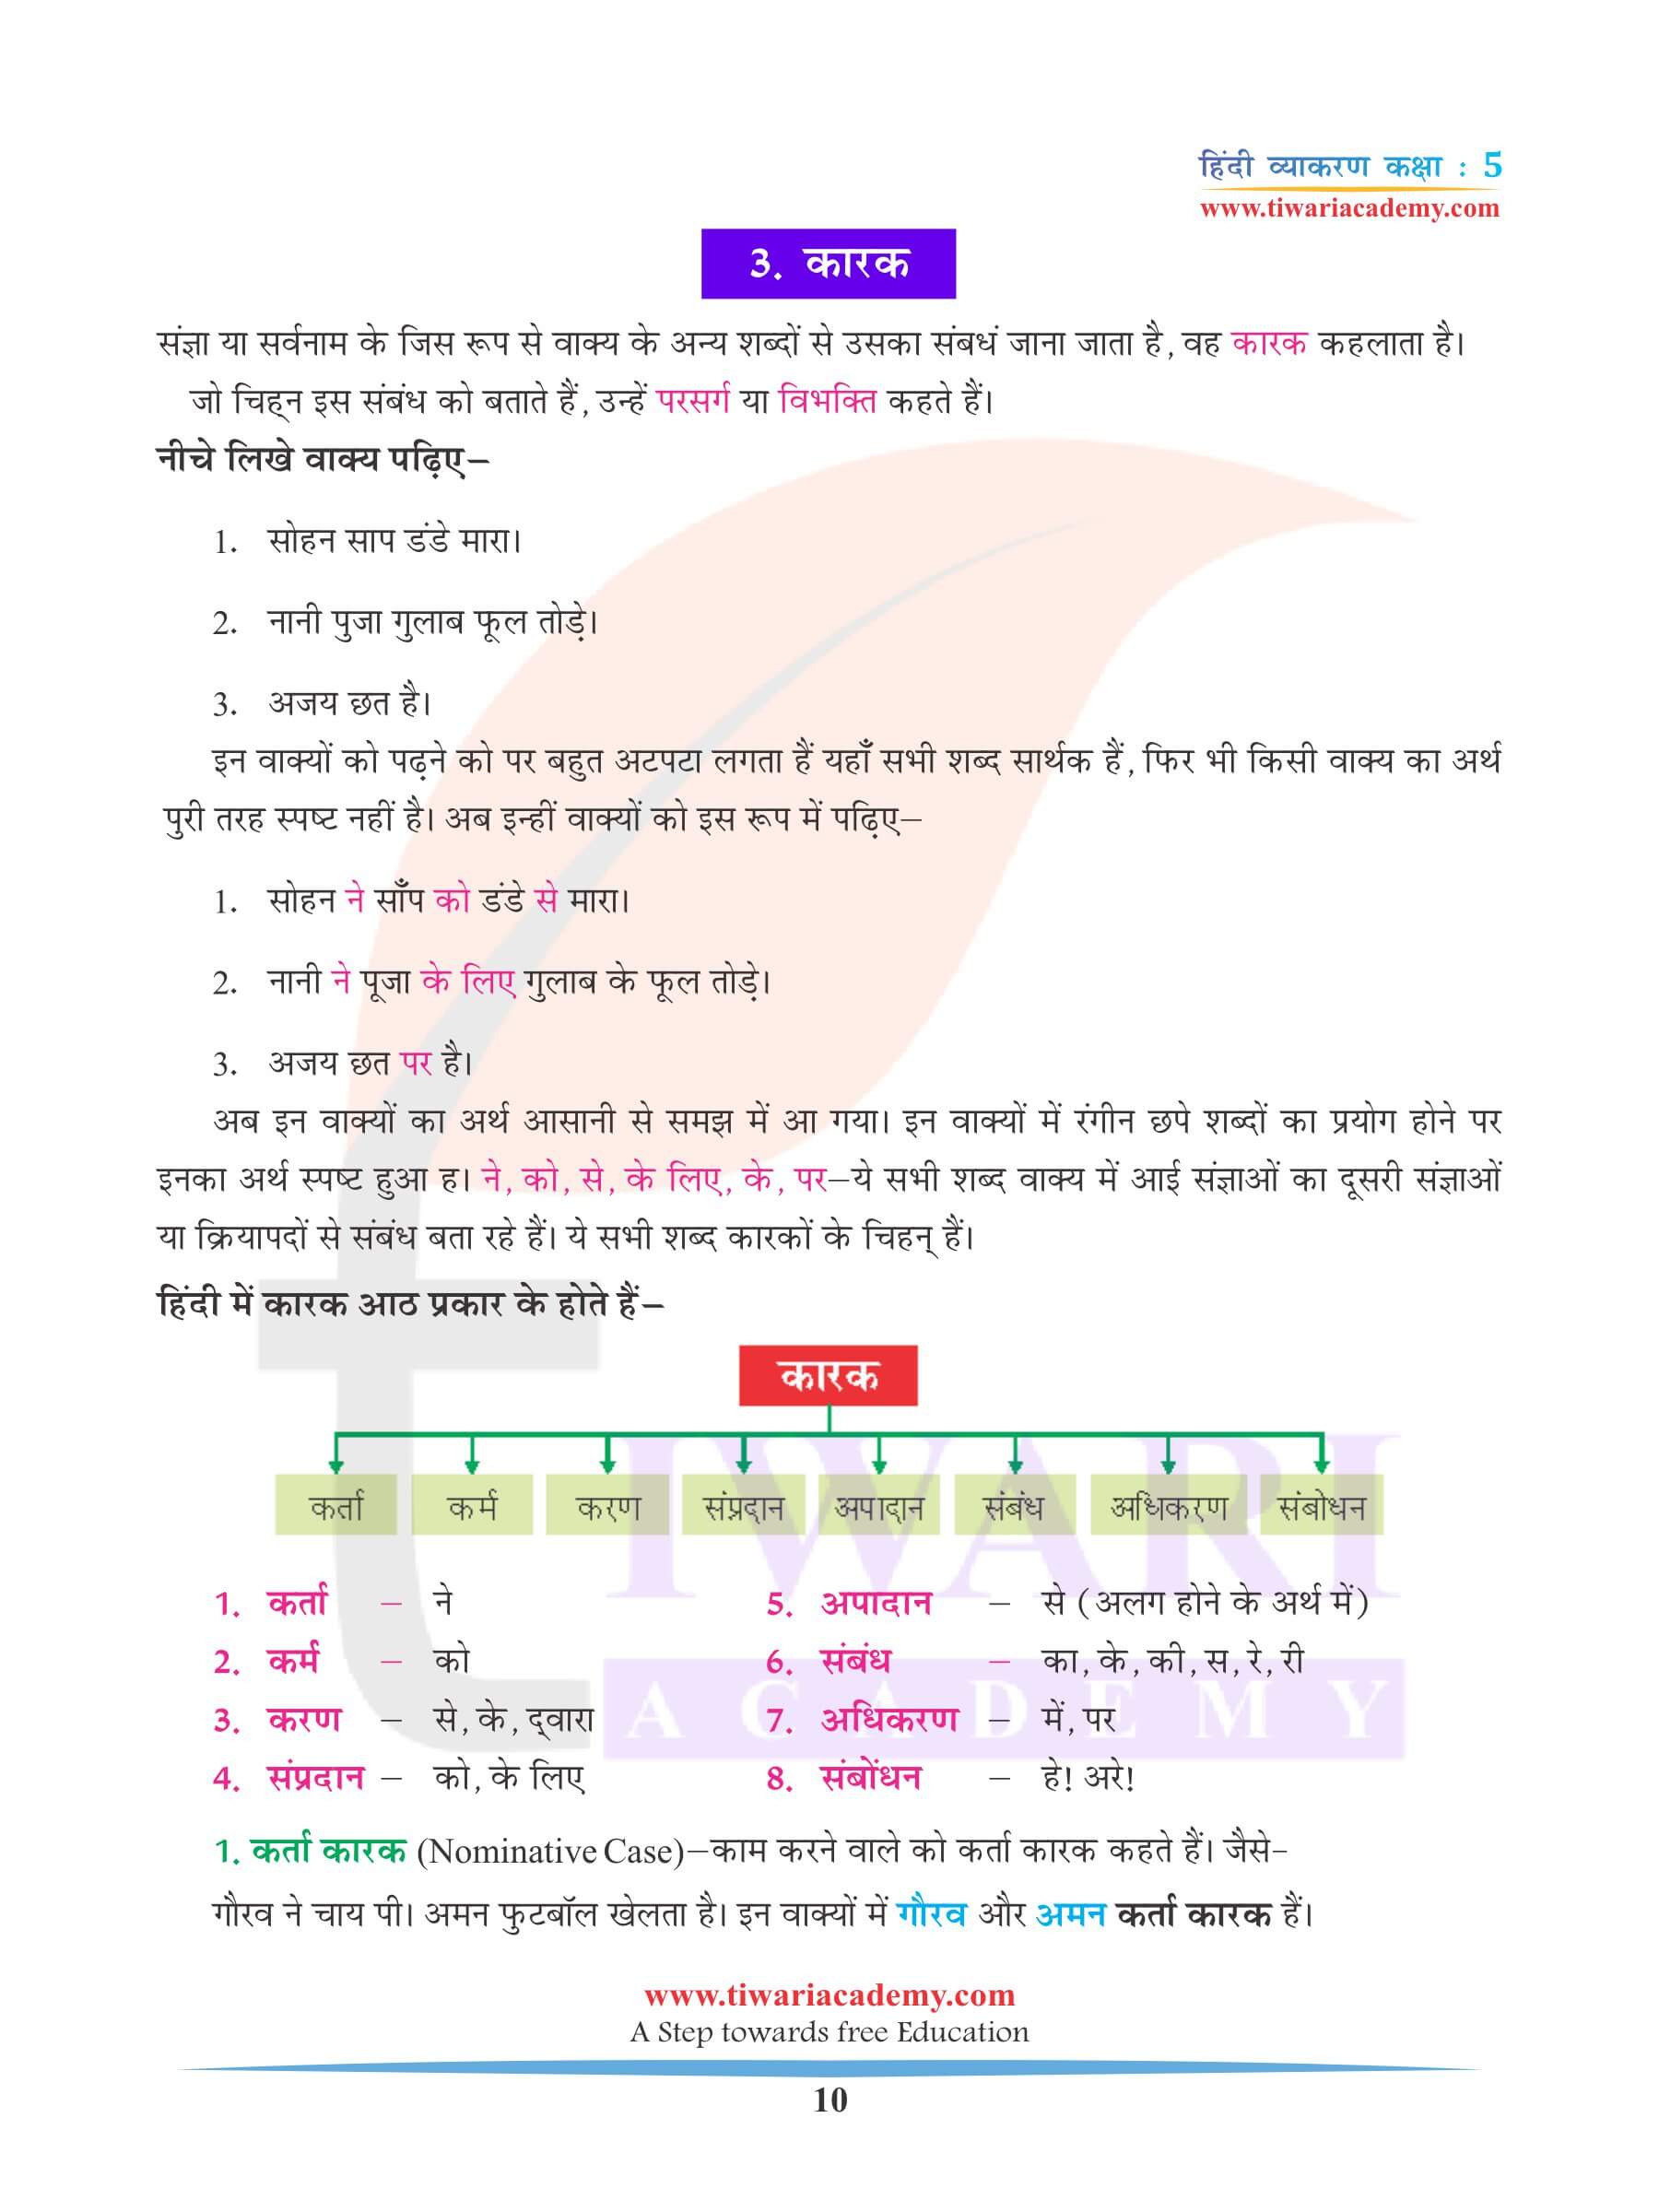 कक्षा 5 हिंदी व्याकरण कारक के लिए उदाहरण